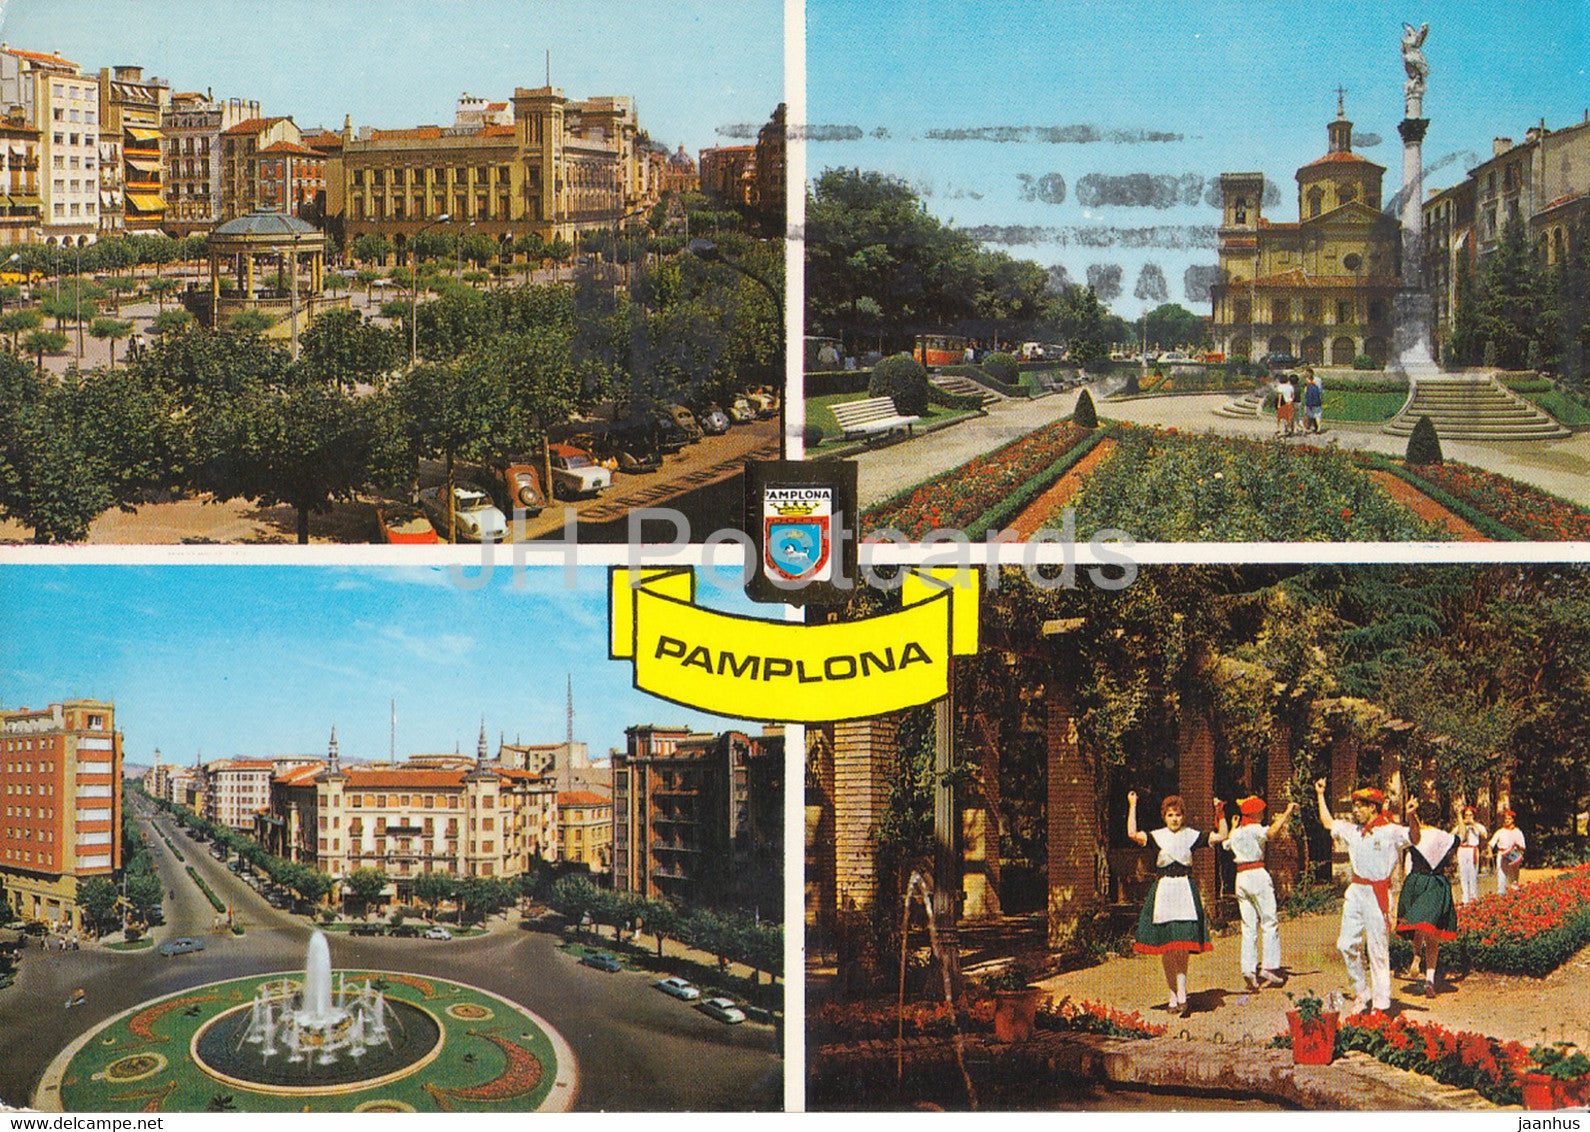 Pamplona - Plaza del Caudillo - Mto a la Inmaculada - Plaza del Principe de Viana - Jardines - 13 - Spain - used - JH Postcards